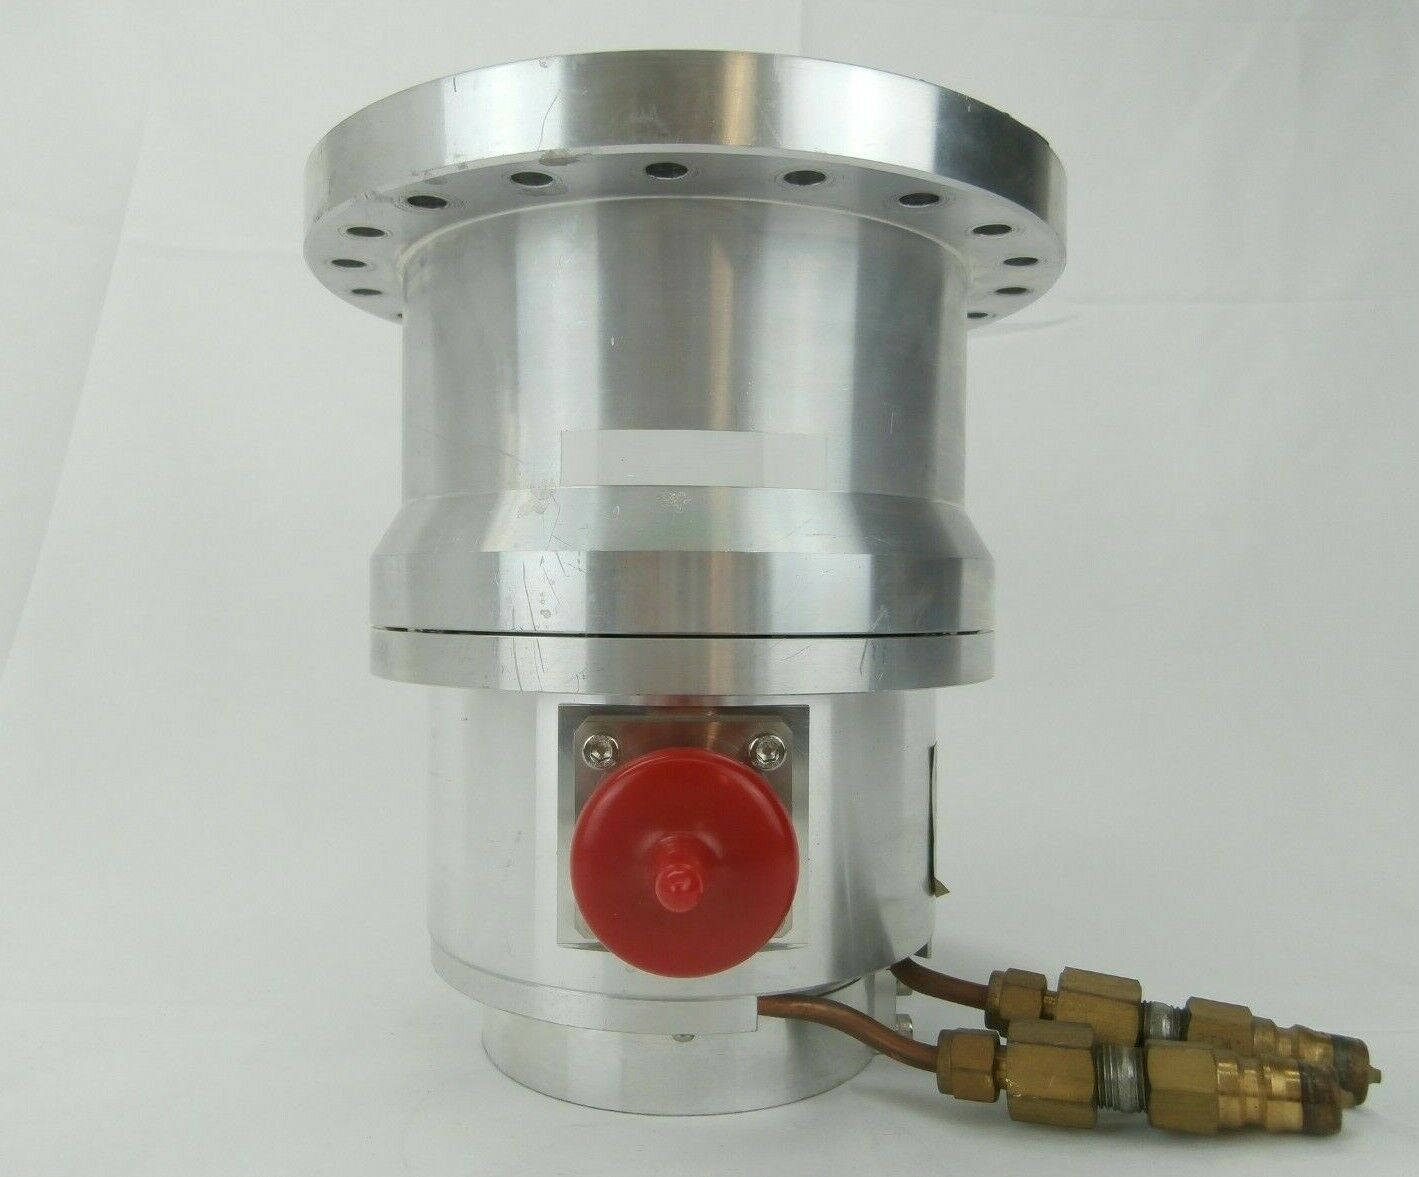 ET Ebara ET300P Turbomolecular Vacuum Pump Turbo Error TRP-C Not Working As-Is